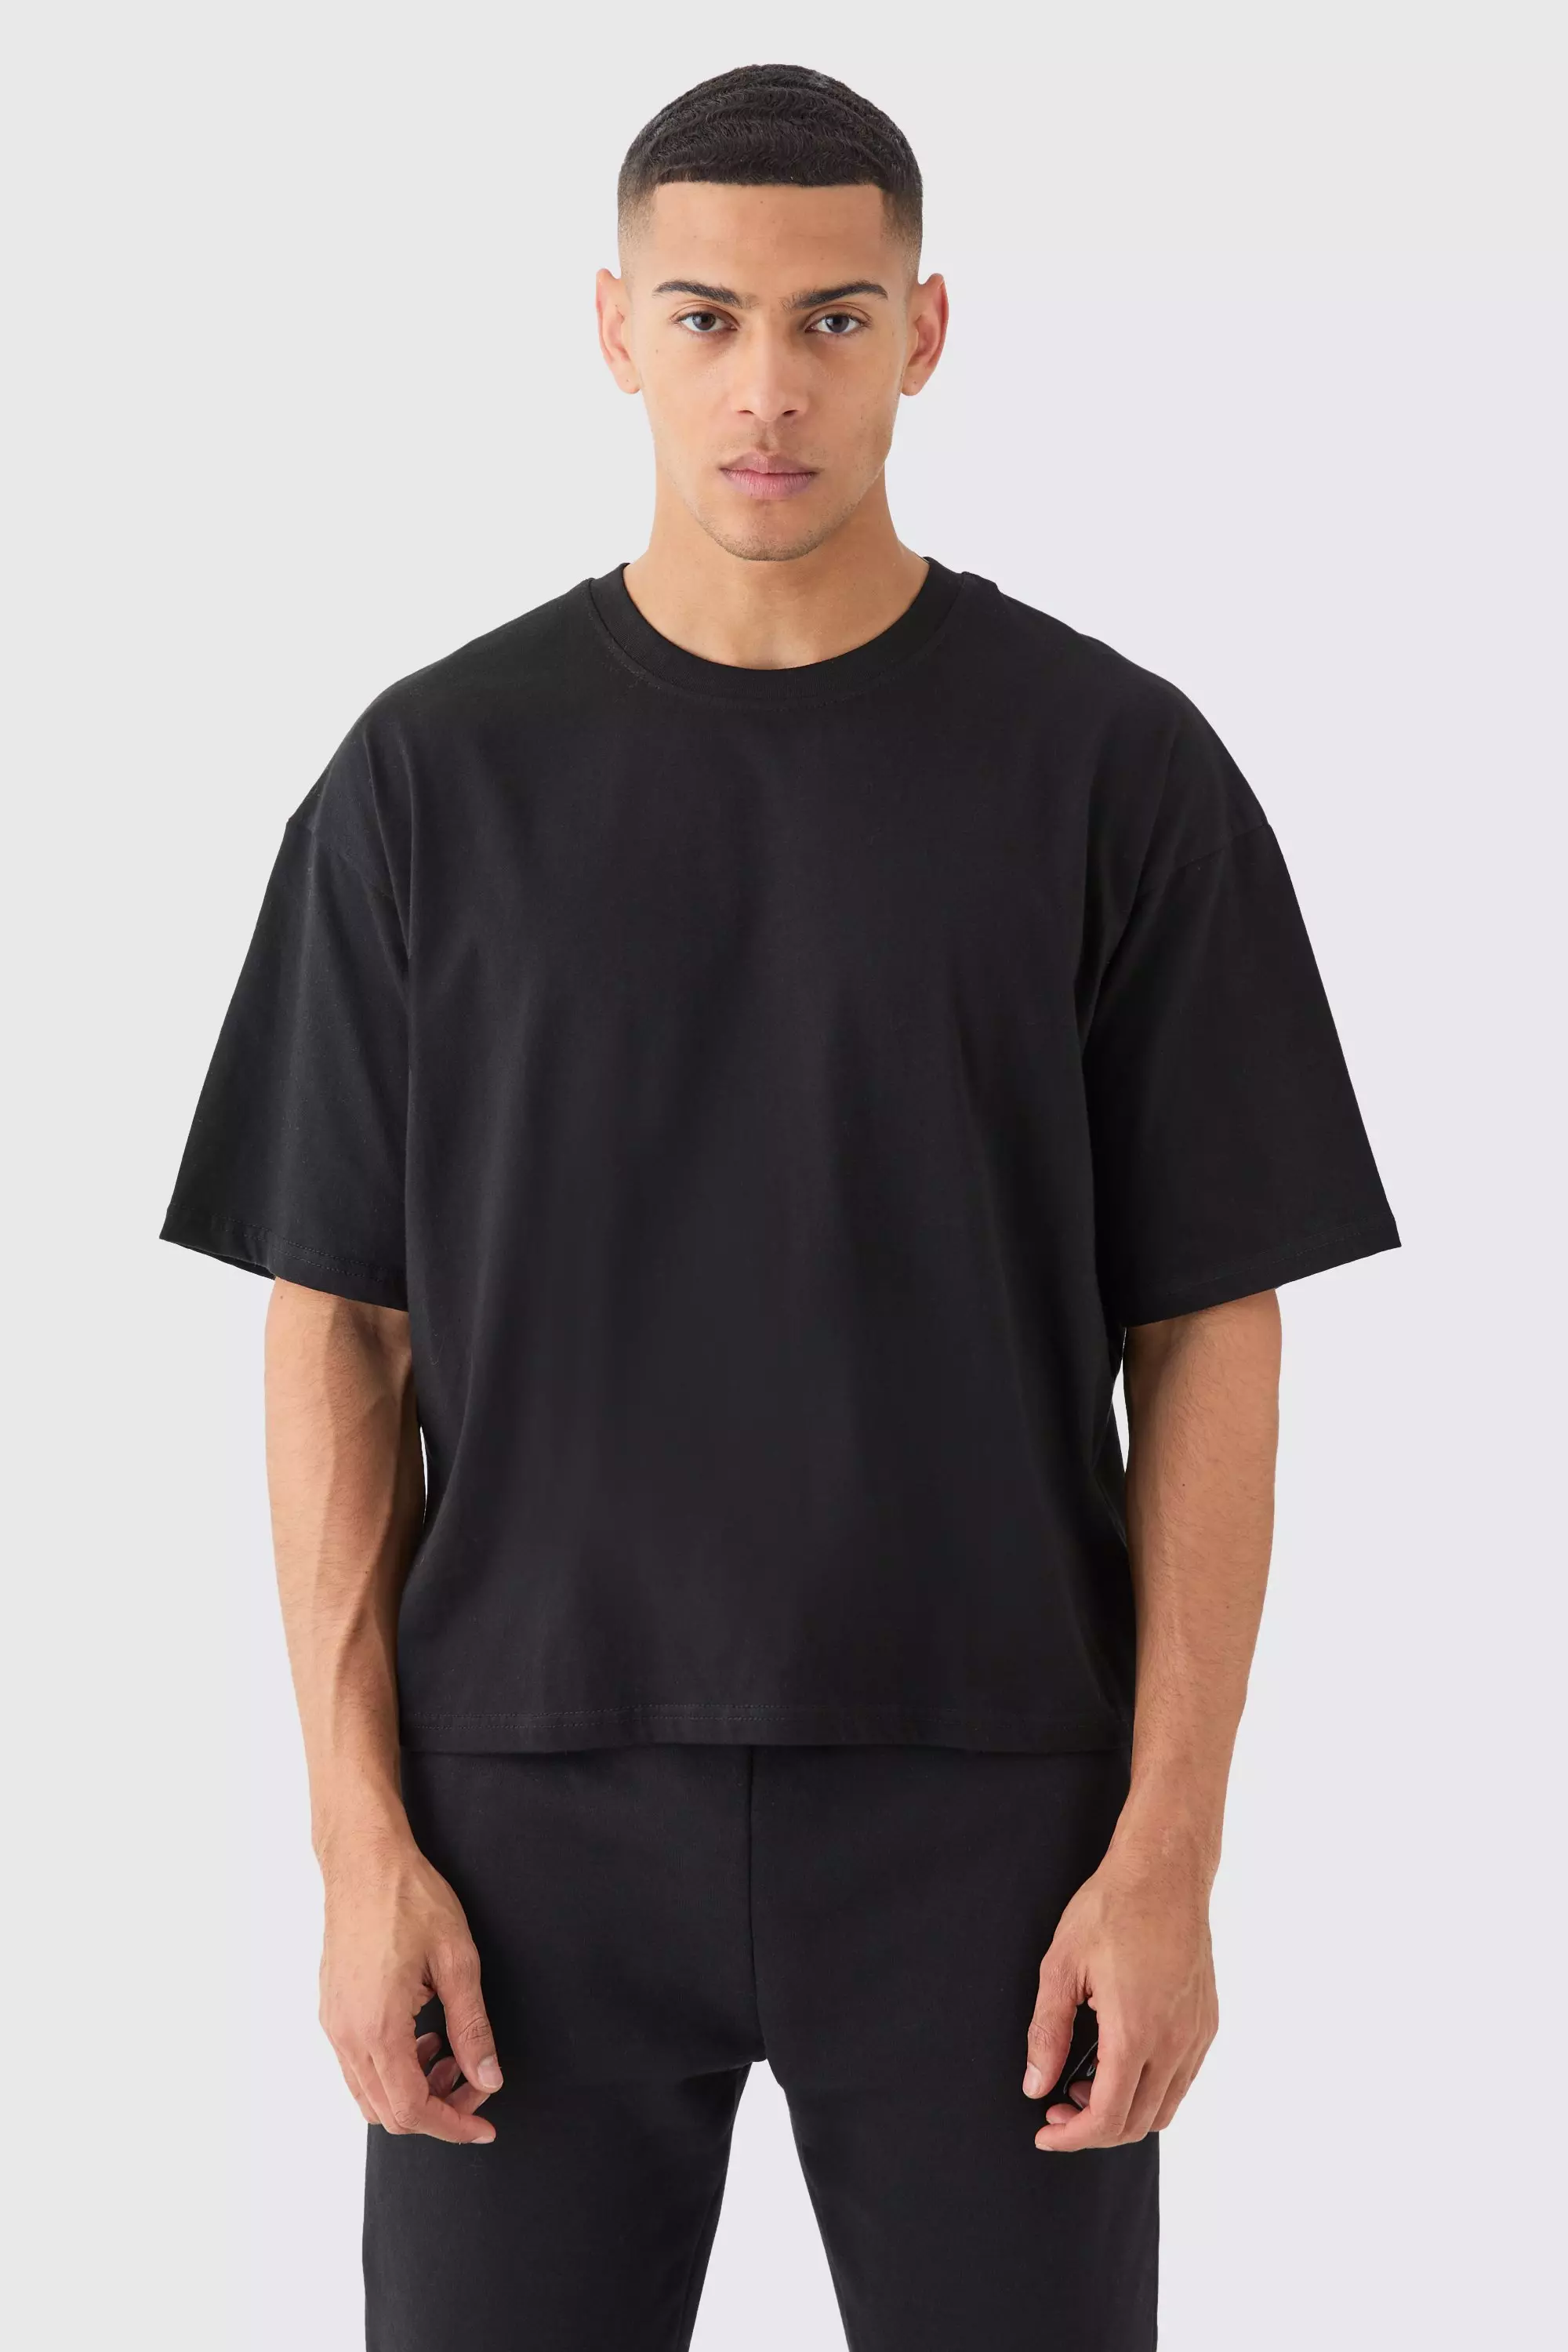 Oversized Boxy Basic T-shirt Black